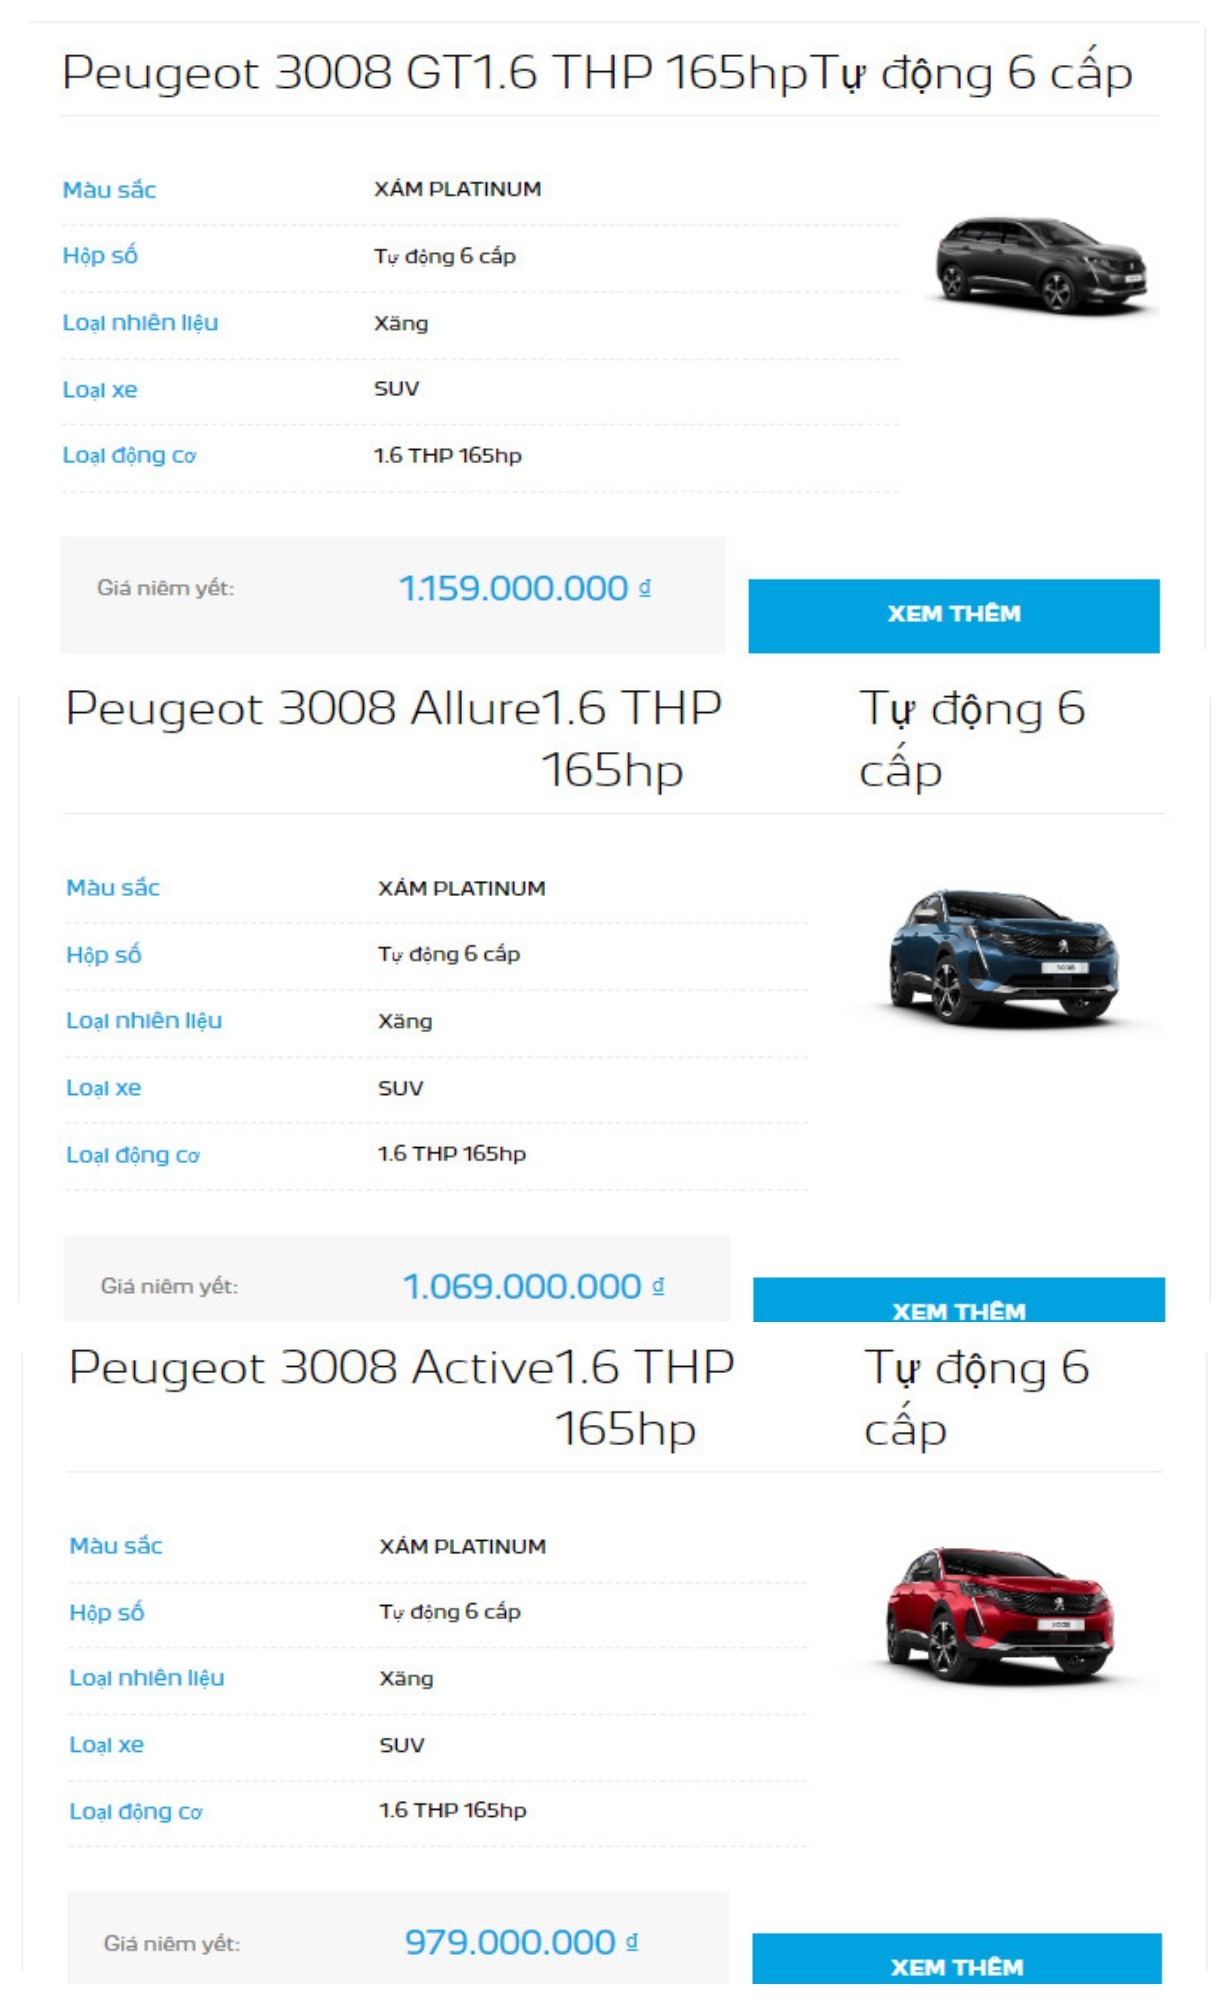 Công bố bảng giá Peugeot mới tại Việt Nam, trong đó một xe giảm hơn 100 triệu đồng